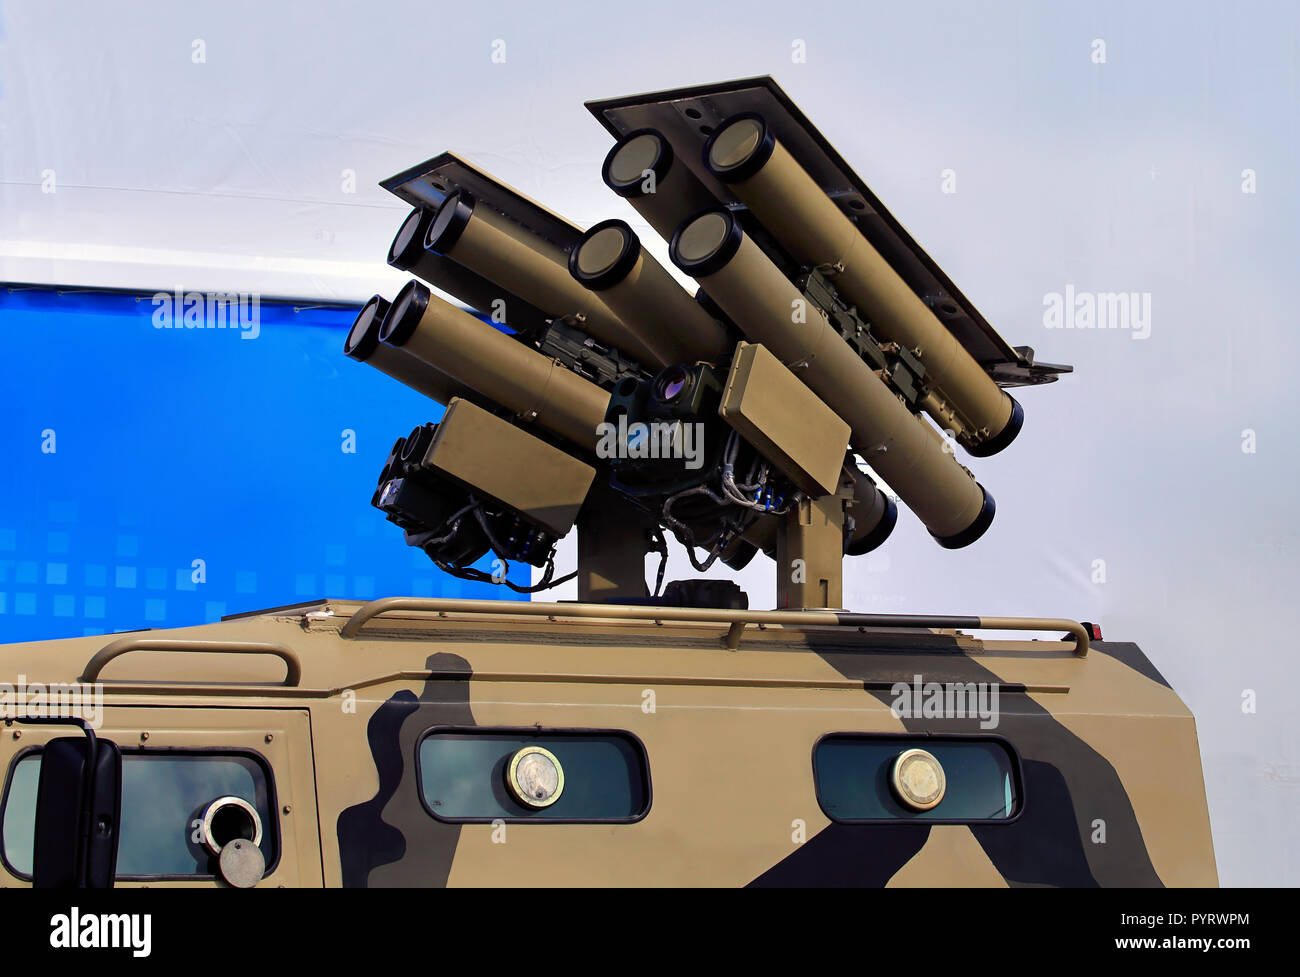 Système de missiles antichars - c'est l'arme pour détruire des véhicules blindés et des fortifications Banque D'Images